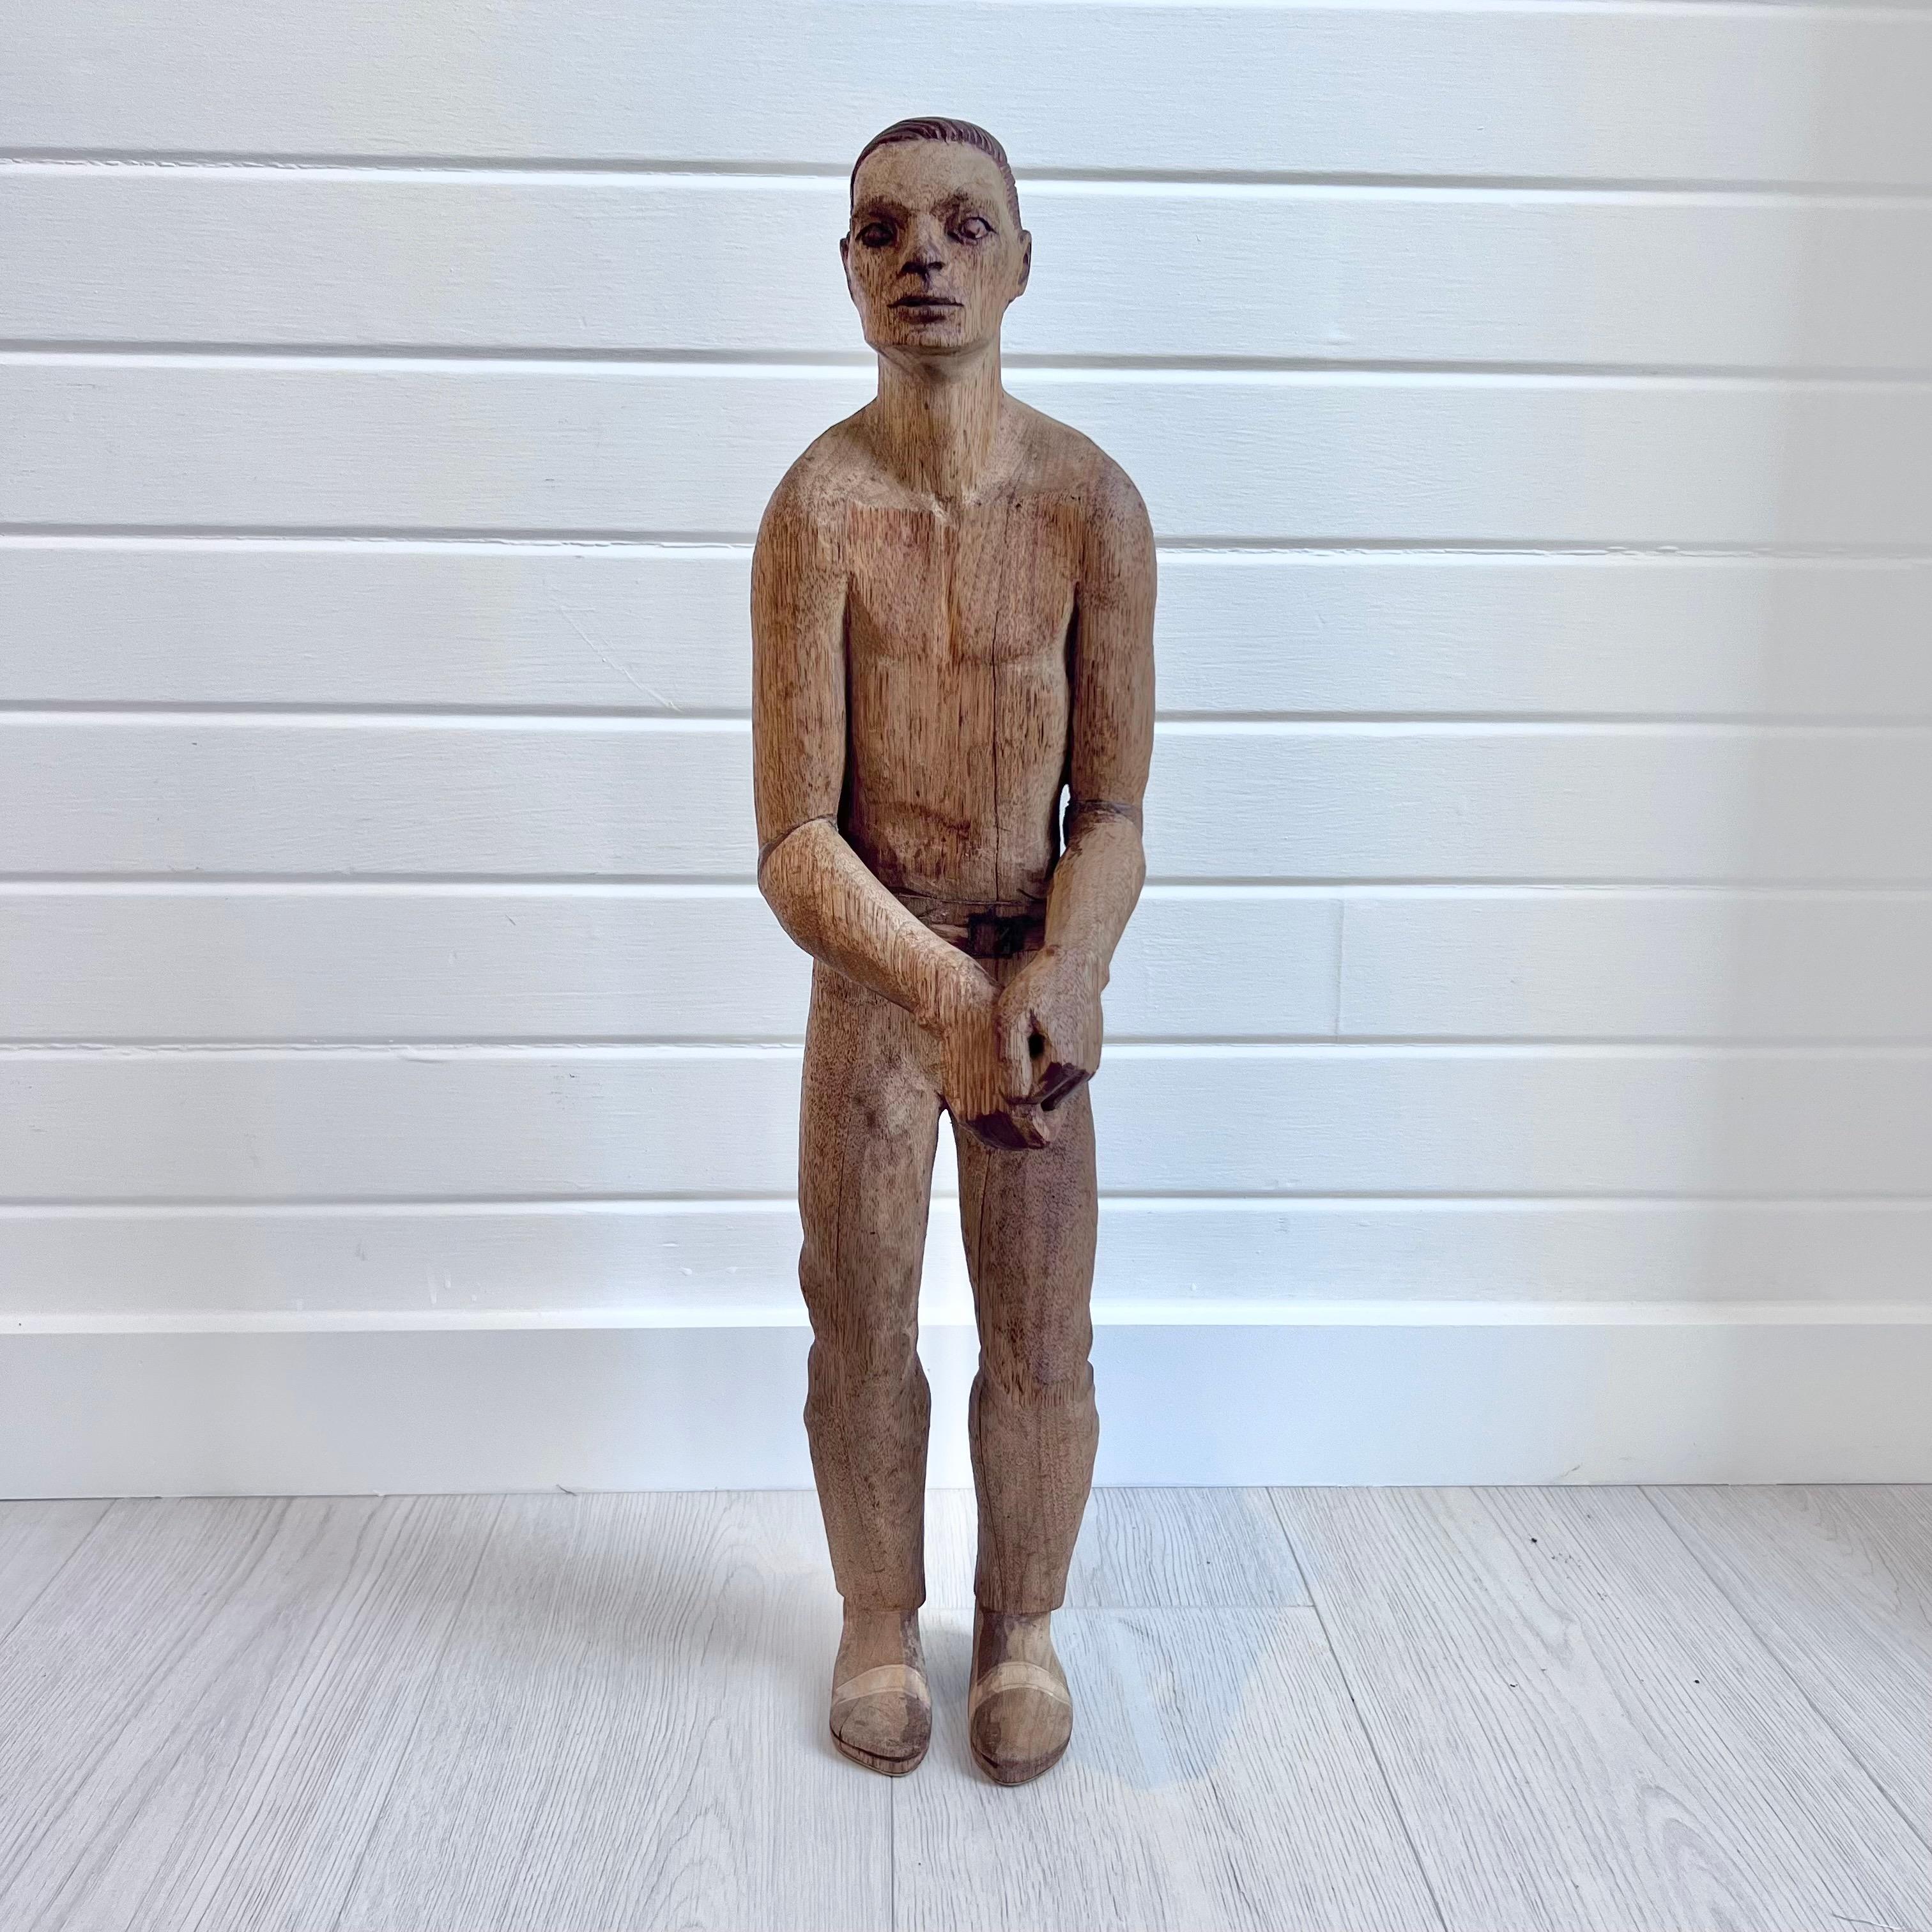 Rare et inhabituelle figure masculine d'art populaire en bois sculpté de la fin du 19e siècle/début du 20e siècle provenant d'une petite ville de pêcheurs de la côte est des États-Unis.

La figurine en bois est sculptée dans une seule pièce de bois